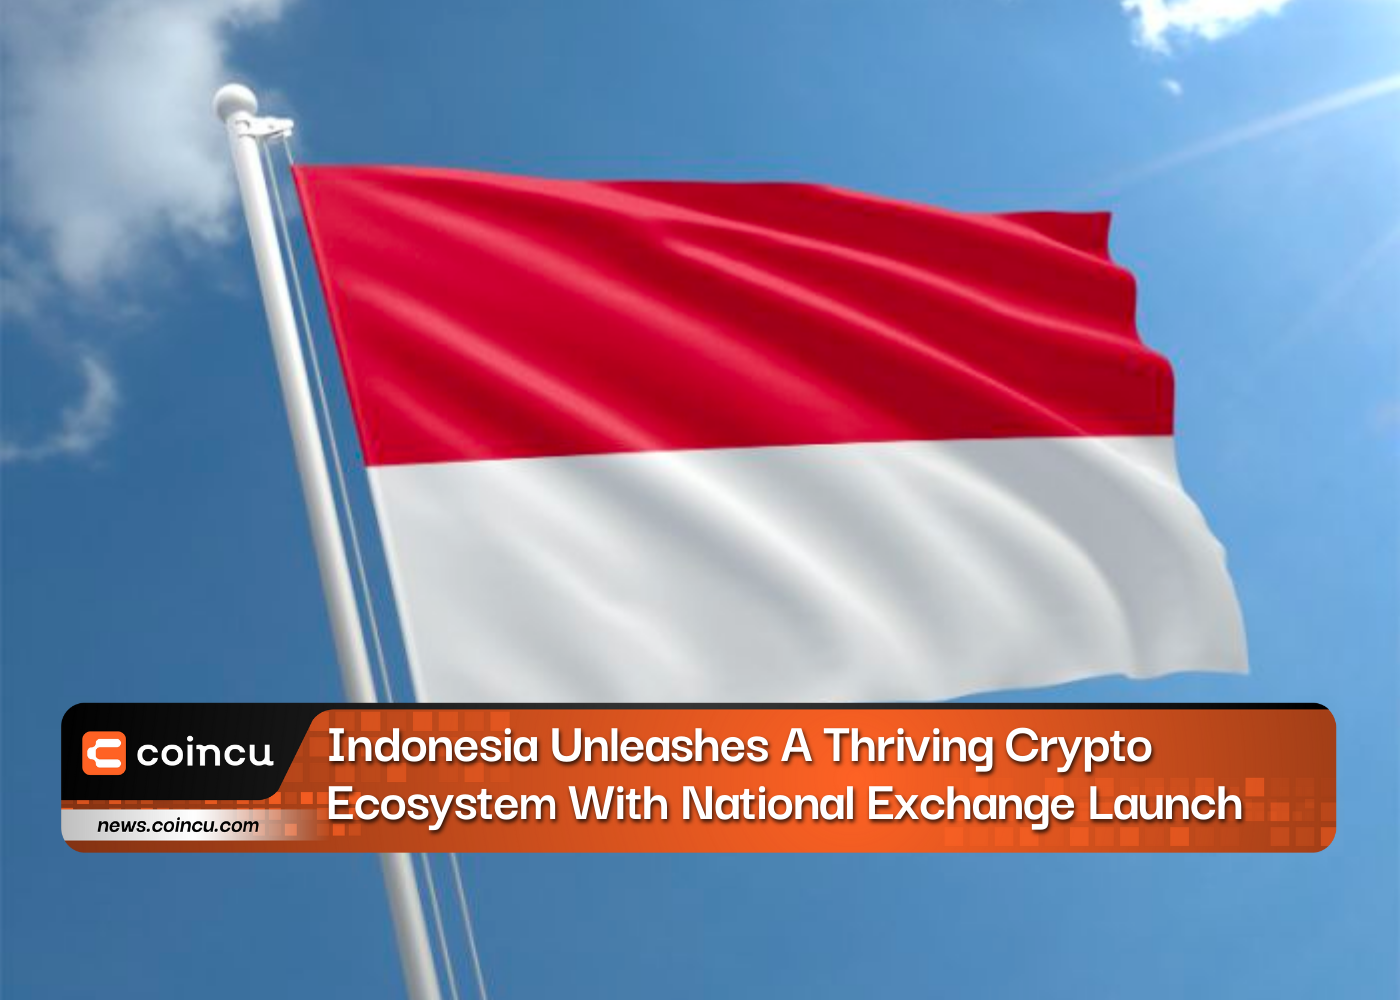 इंडोनेशिया ने राष्ट्रीय एक्सचेंज लॉन्च के साथ एक संपन्न क्रिप्टो पारिस्थितिकी तंत्र को उजागर किया